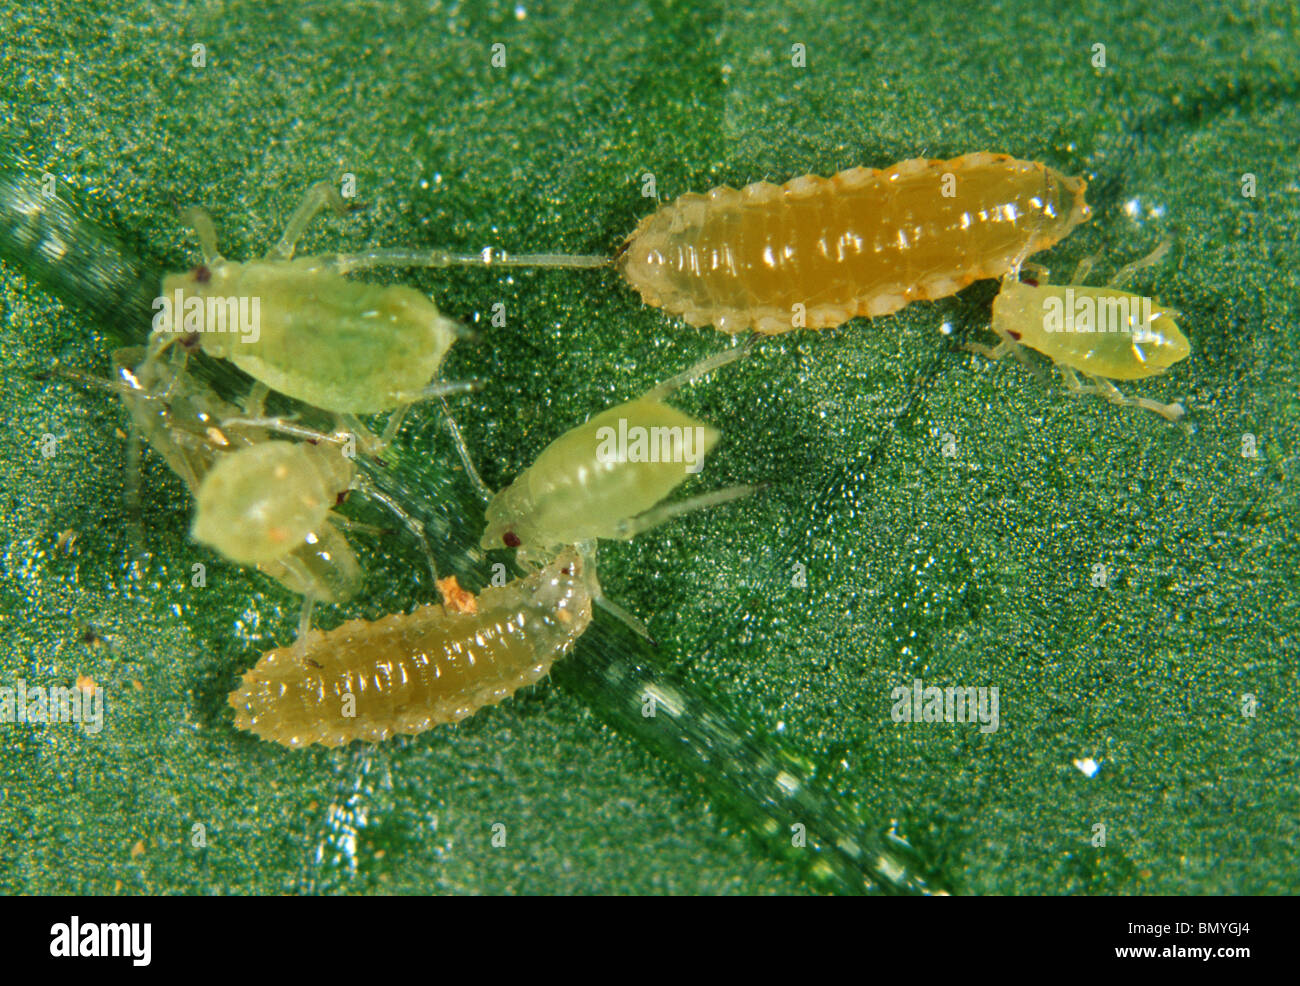 Predatory midge (Aphidoletes aphidimyza) aphid predator with greenfly prey Stock Photo